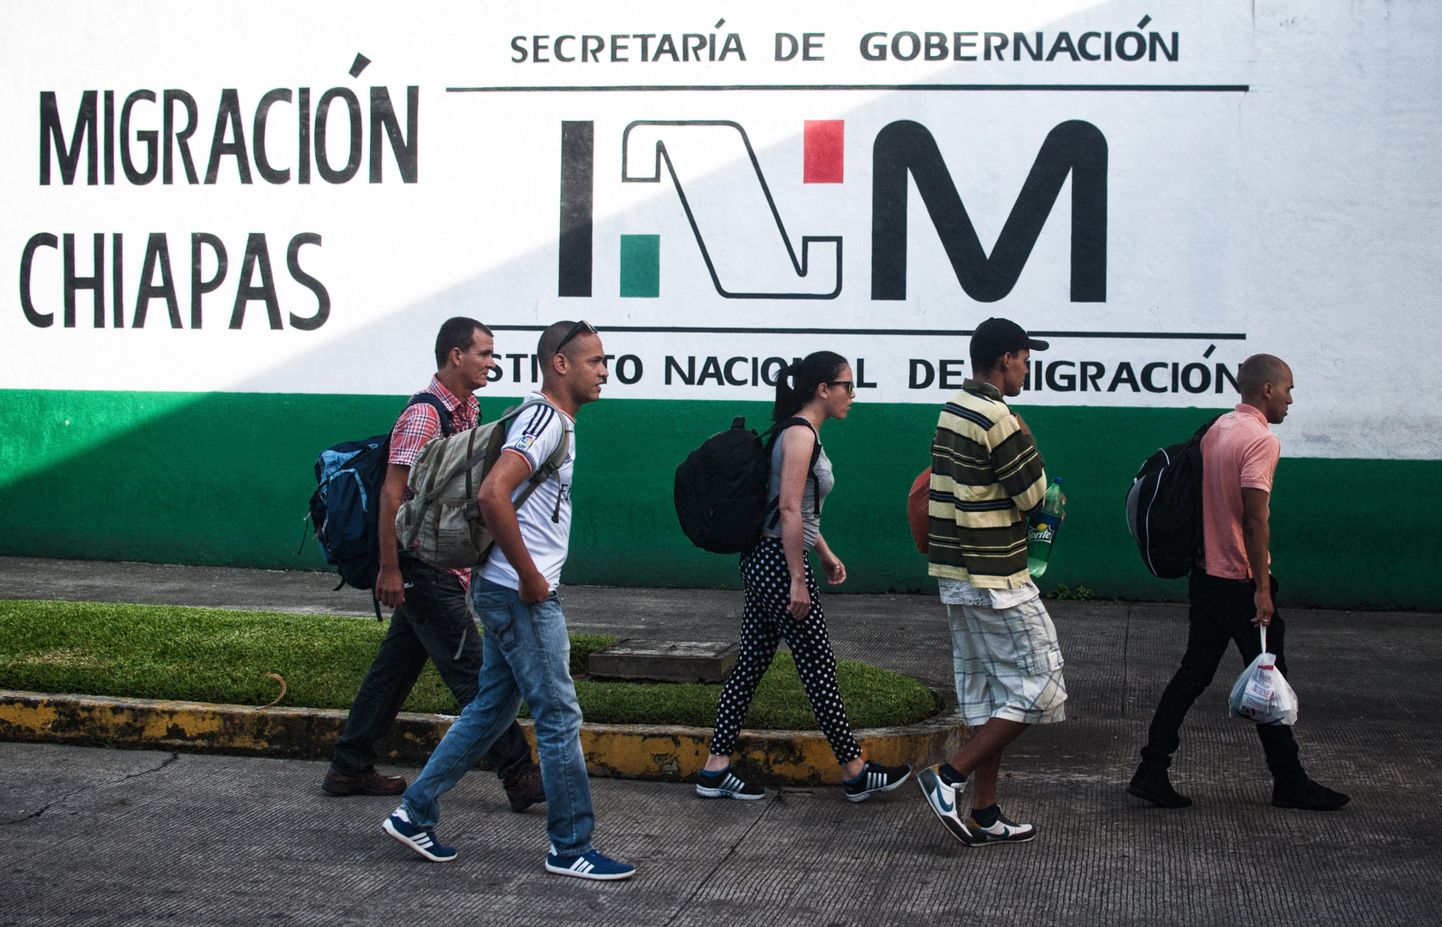 Kuuba emigrandid teel migratsioonikeskusesse Chiapase linnas Mehhikos.